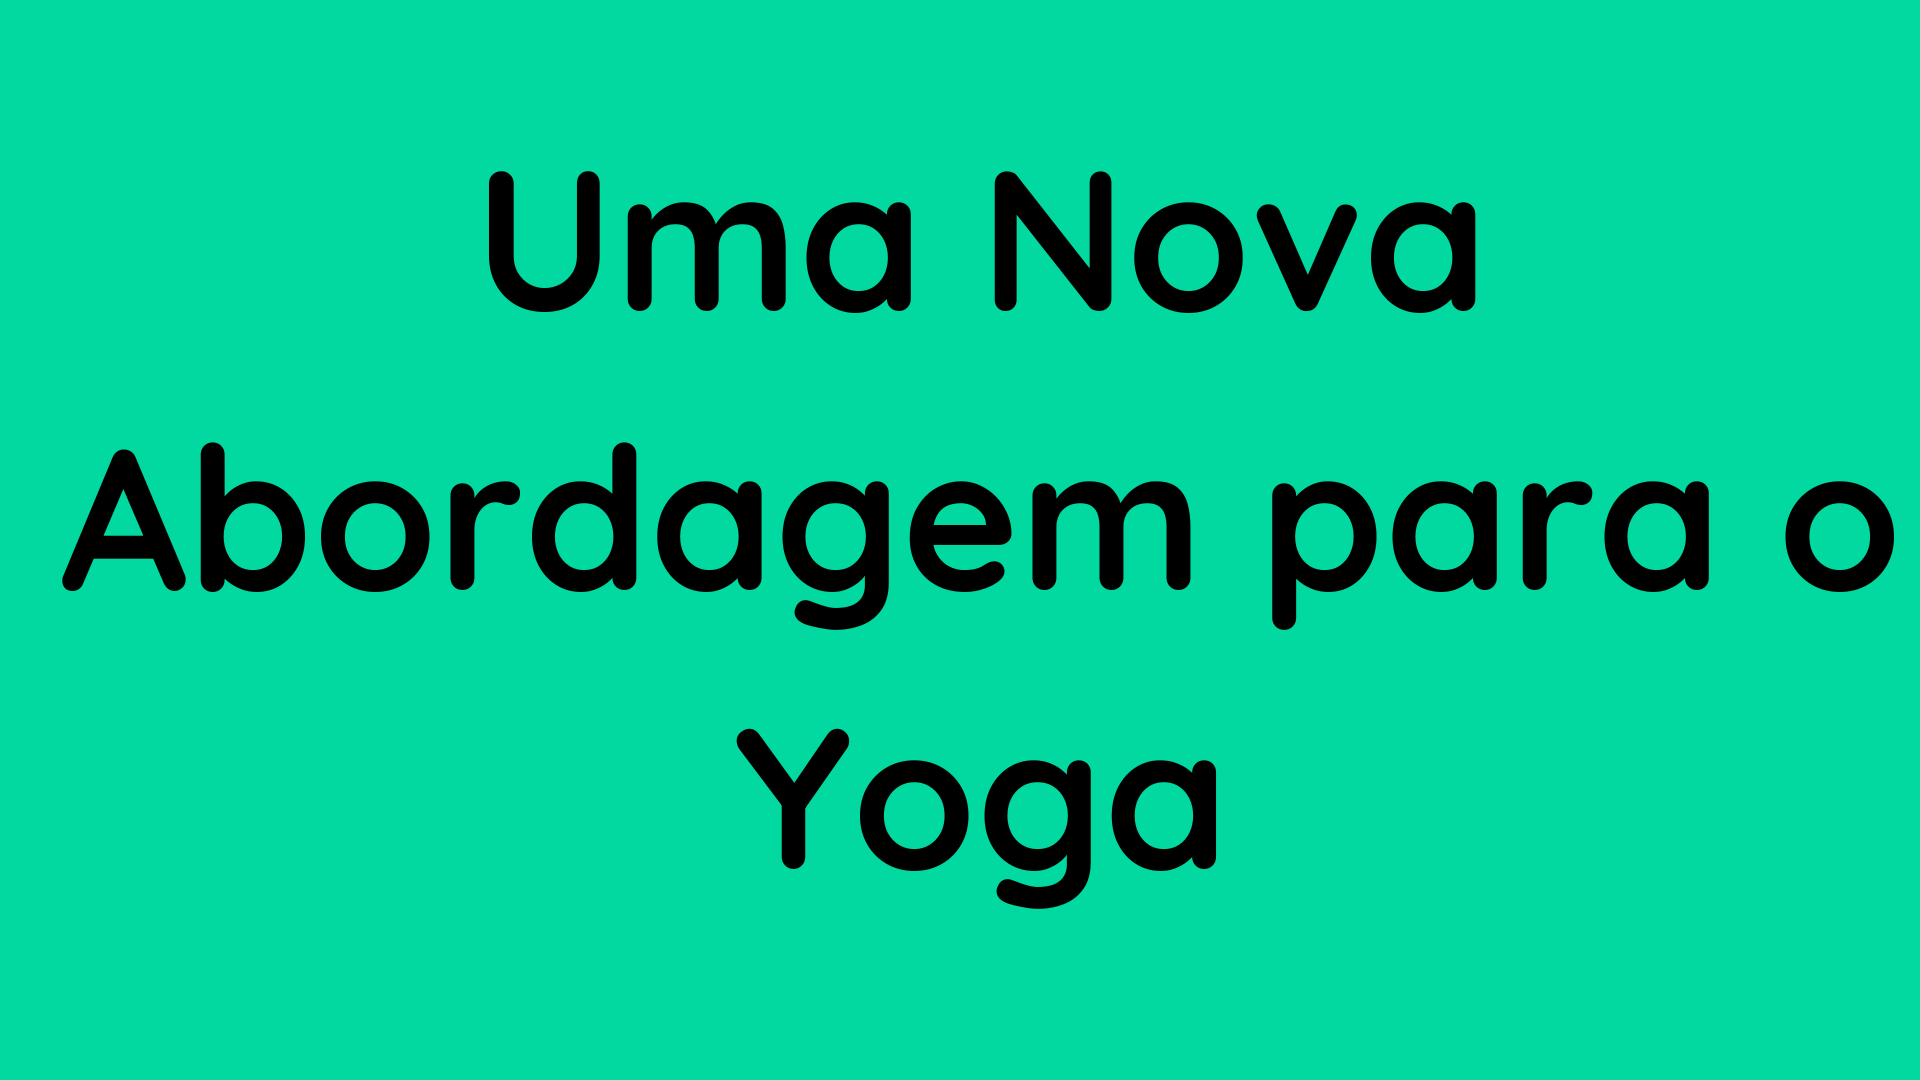 Uma Nova Abordagem para o Yoga